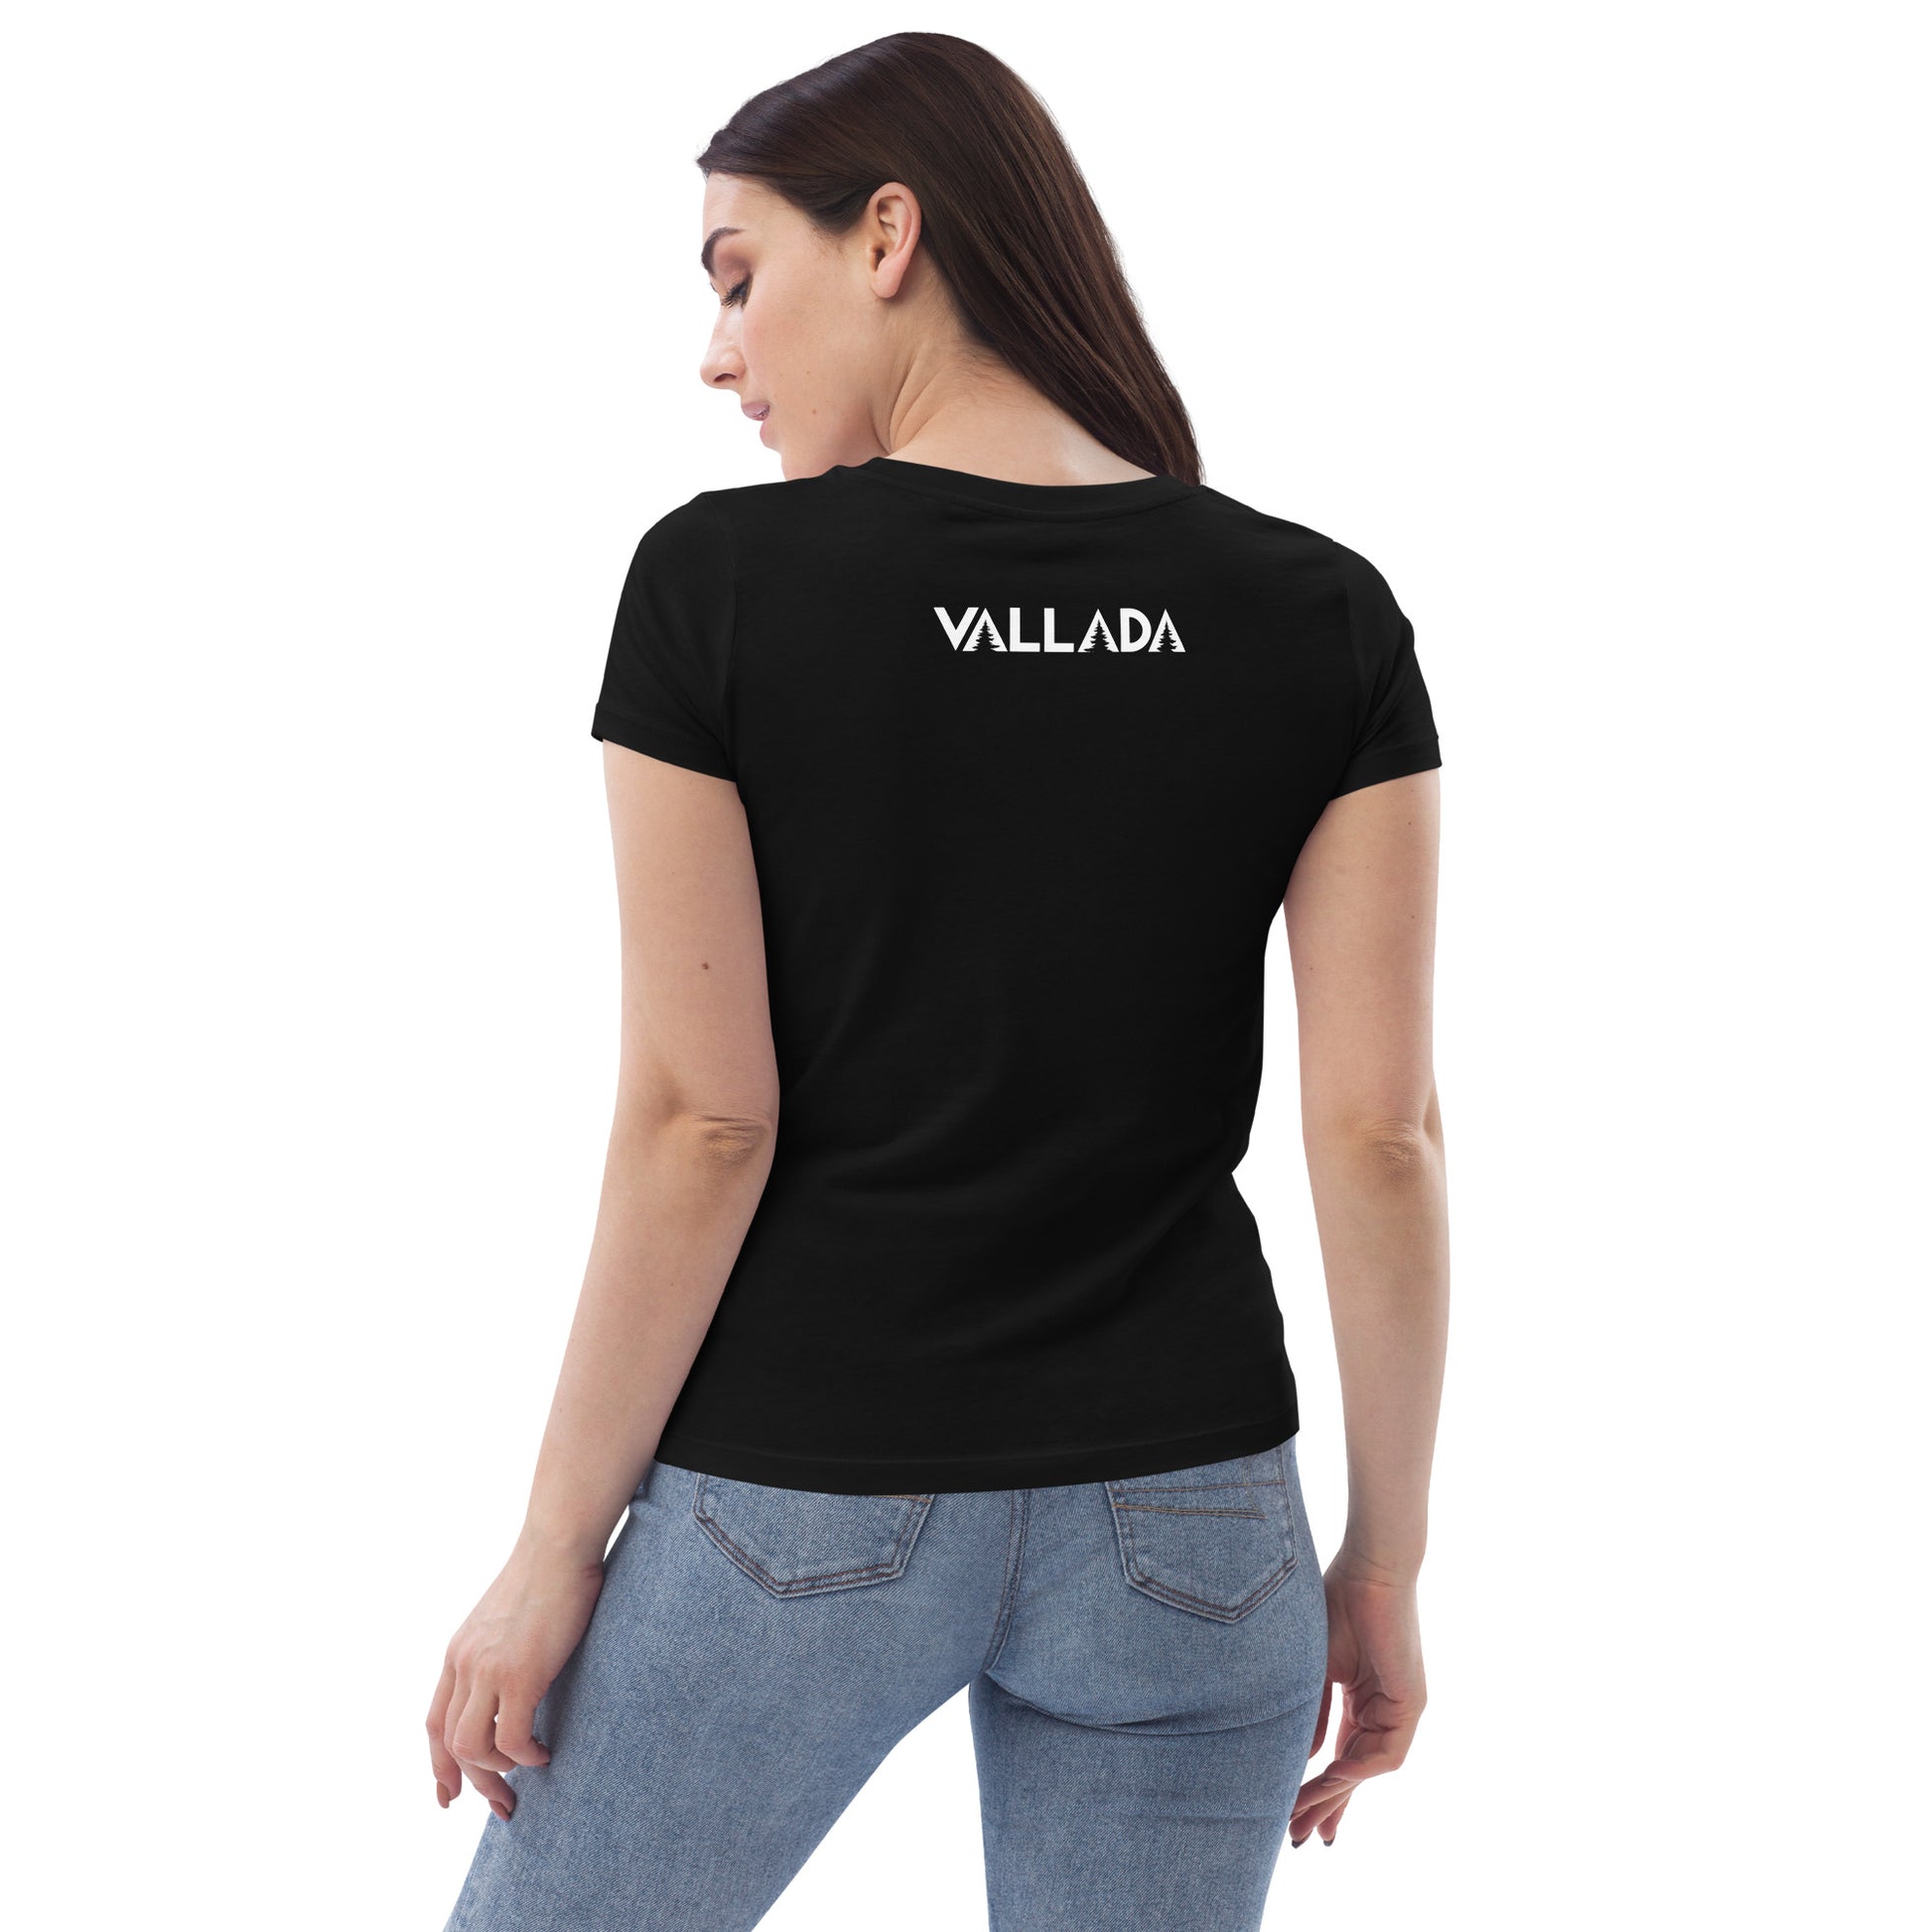 Sie steht mit dem Rücken zu uns, so dass wir die Rückseite des schwarzen T-Shirts mit dem Vallada-Logo sehen können. Zum T-Shirt tägt sie eine blaue, enge Jeans.